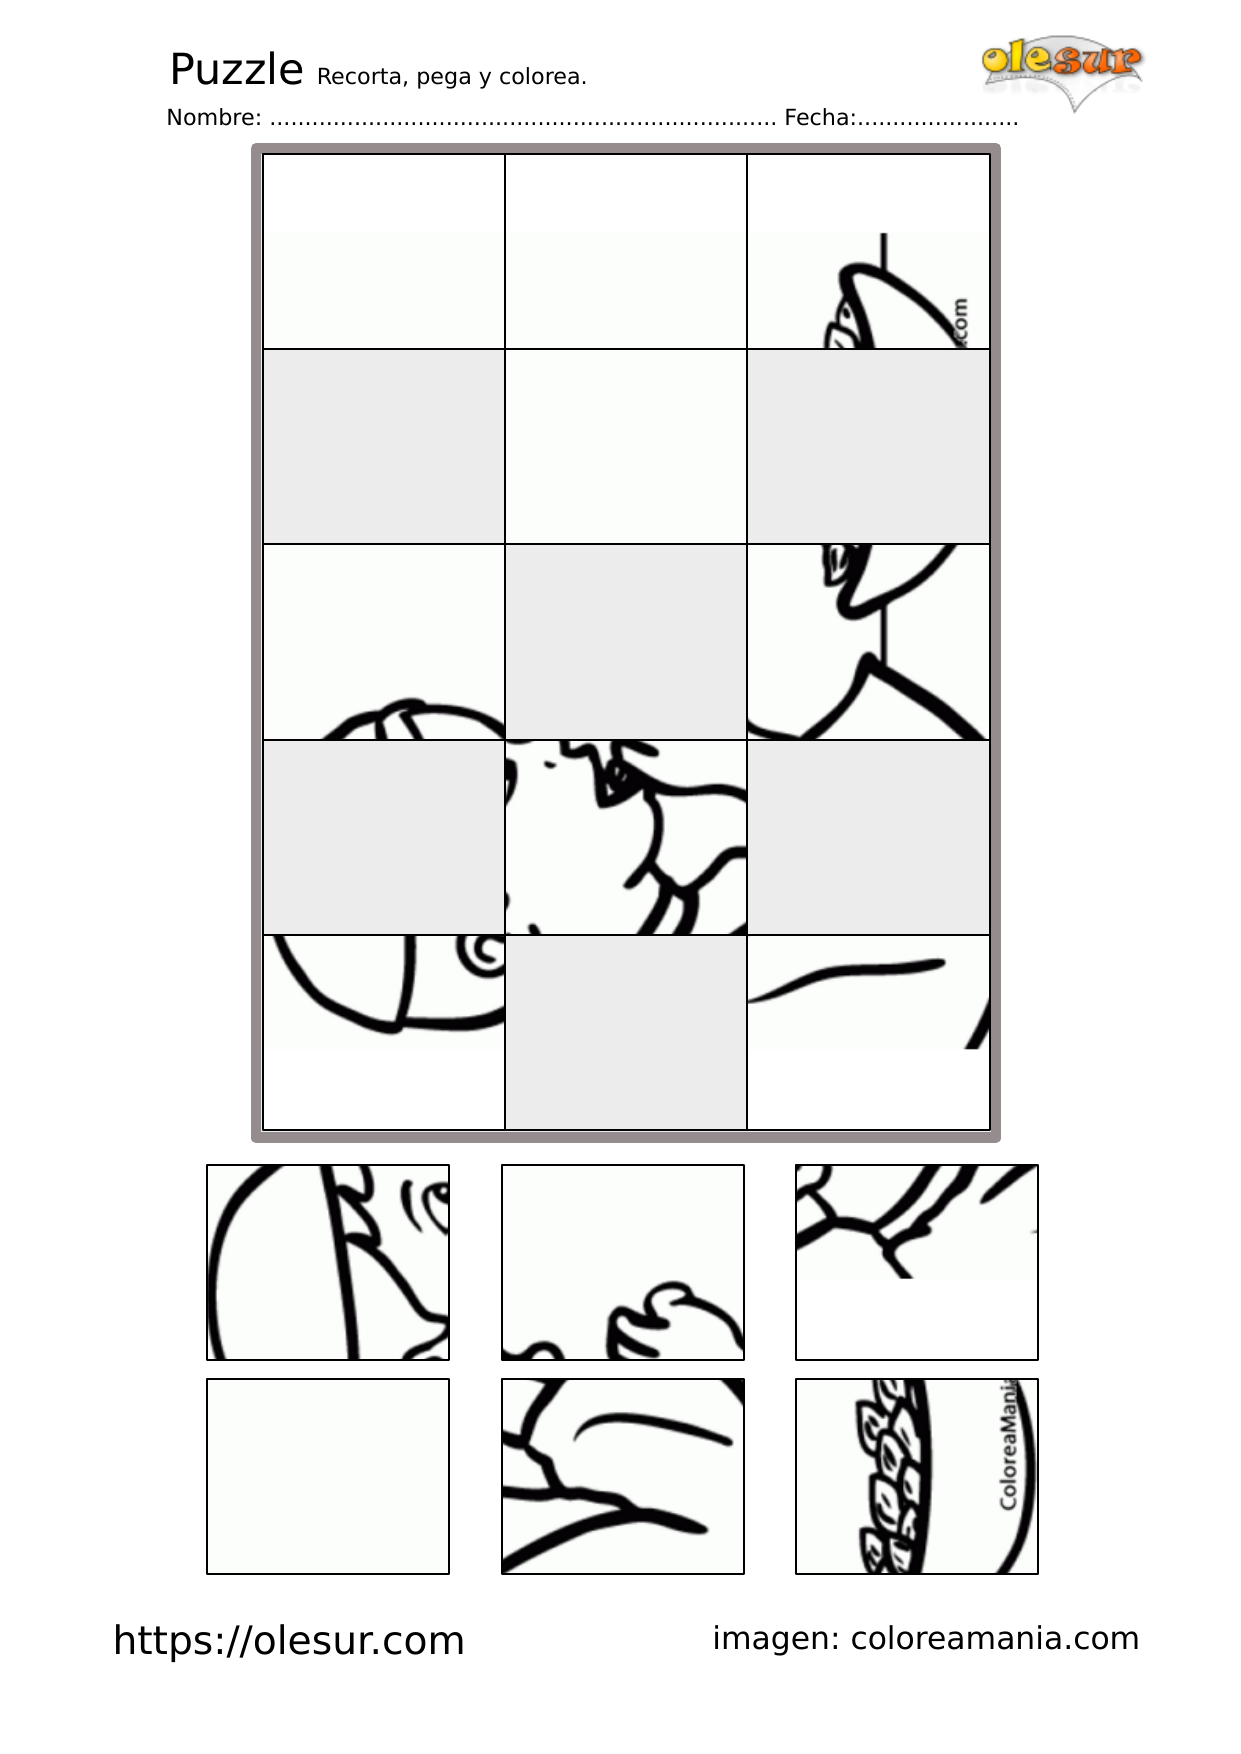 Descargar: Completa el Puzzle 3×5 para colorear- 2022-01-21. – olesur